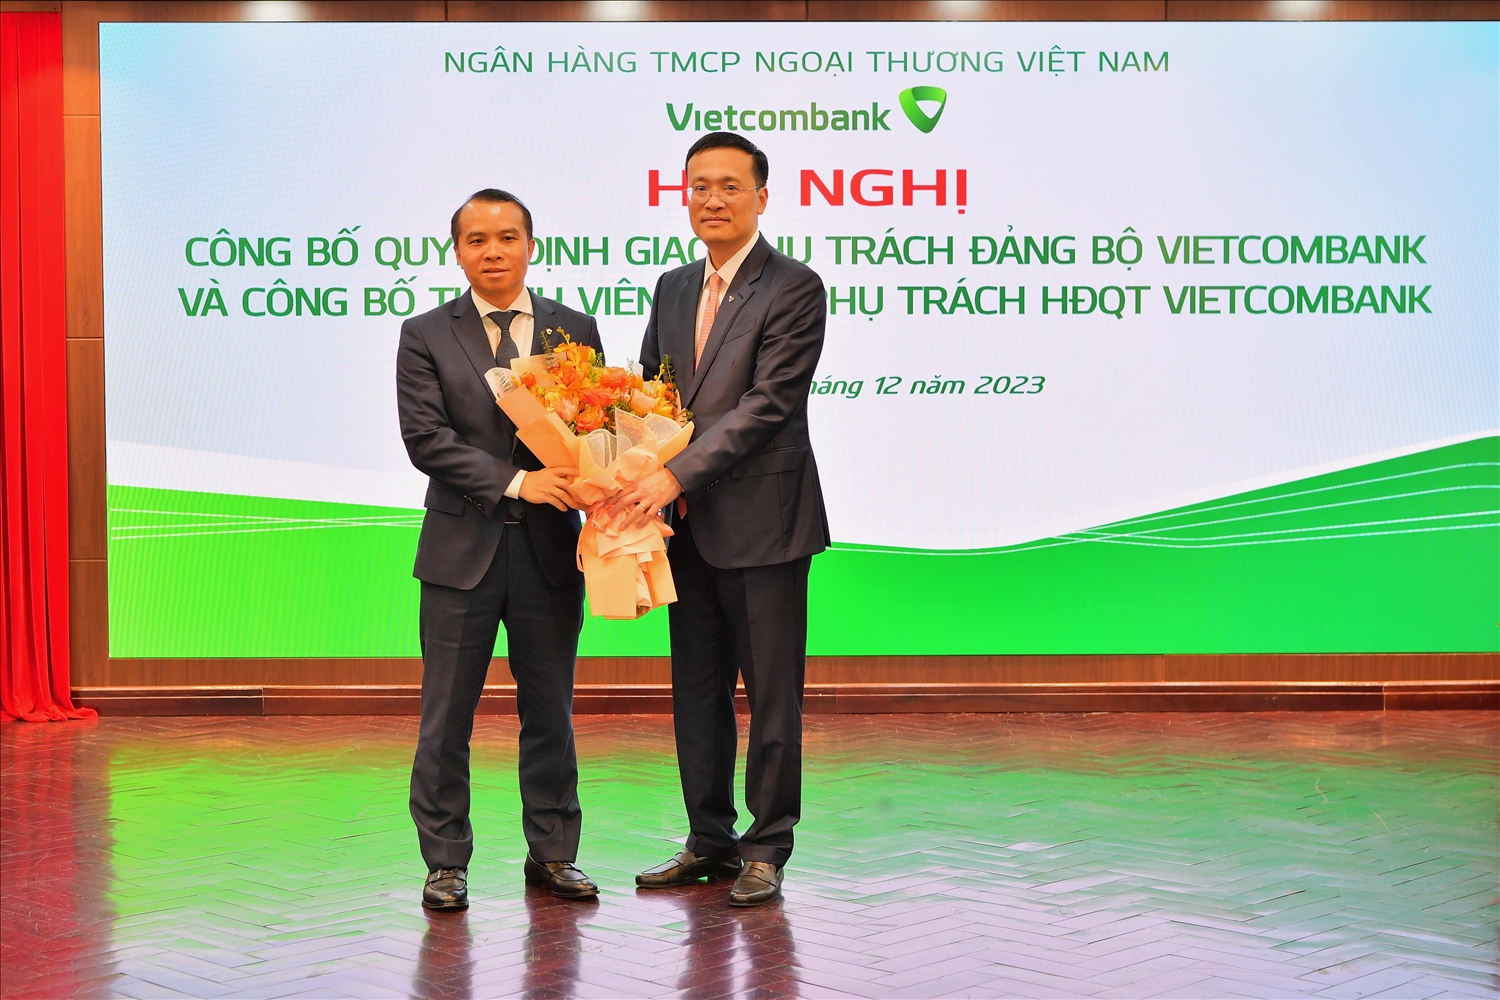 Đ/c Phạm Quang Dũng - Bí thư Đảng ủy, Chủ tịch HĐQT Vietcombank (bên phải) tặng hoa chúc mừng đ/c Đỗ Việt Hùng